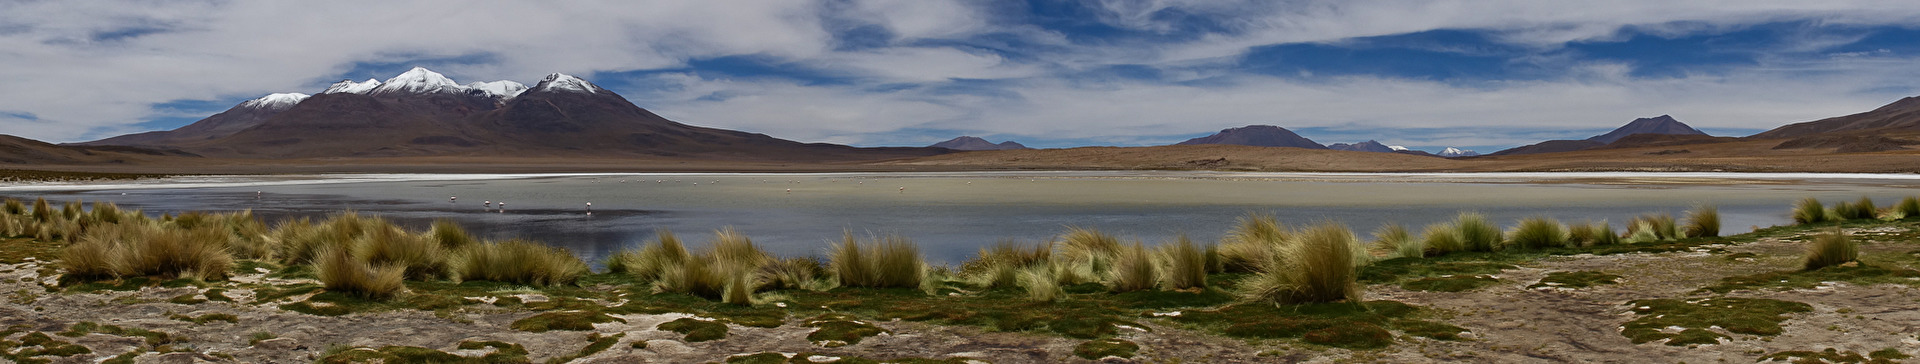 einfach schön -Bolivien